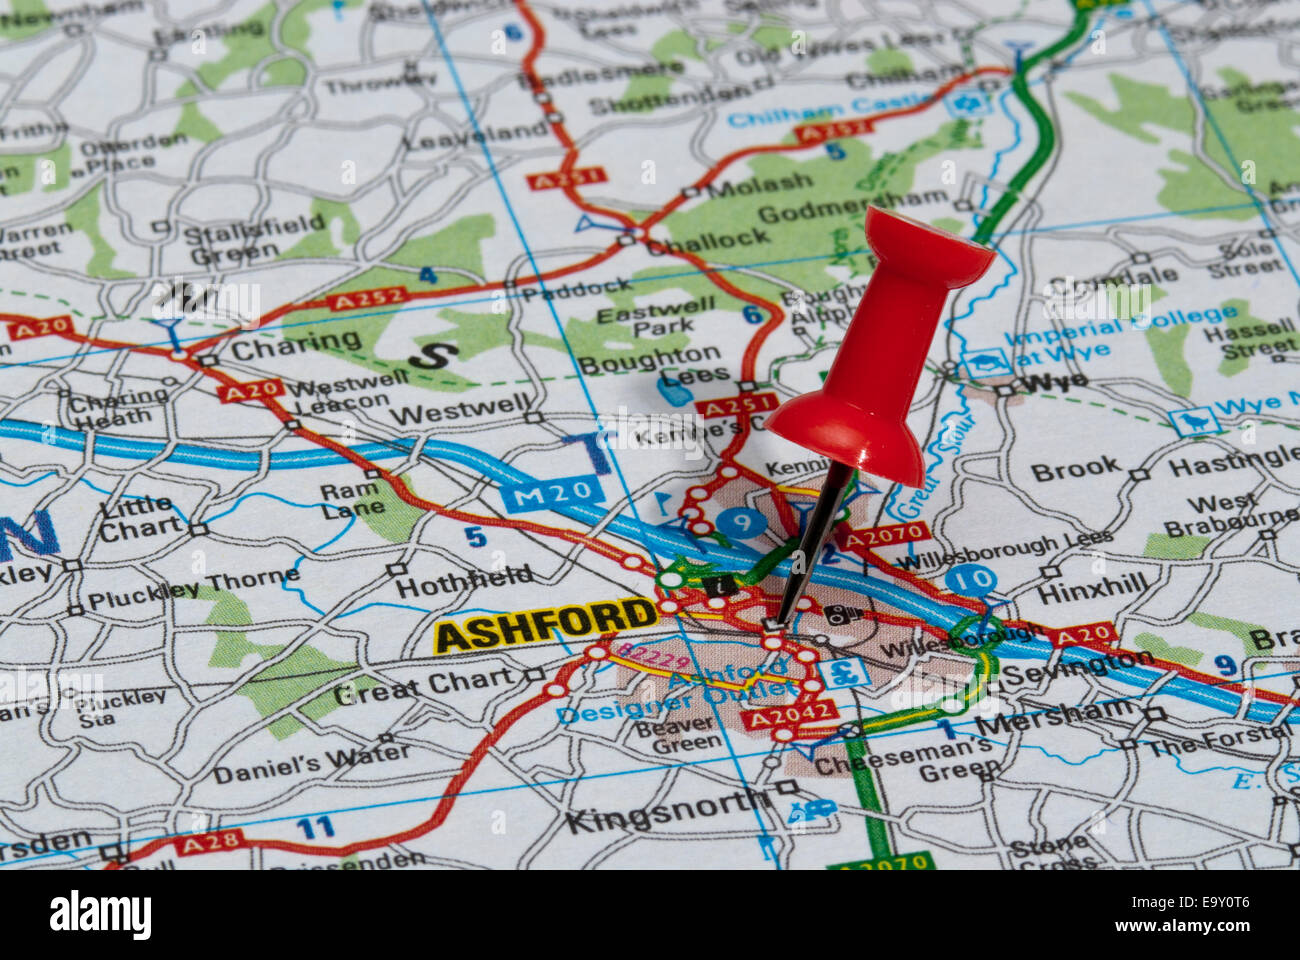 Rosso Spina Mappa Nella Mappa Stradale Rivolta Alla Citta Di Ashford E9y0t6 